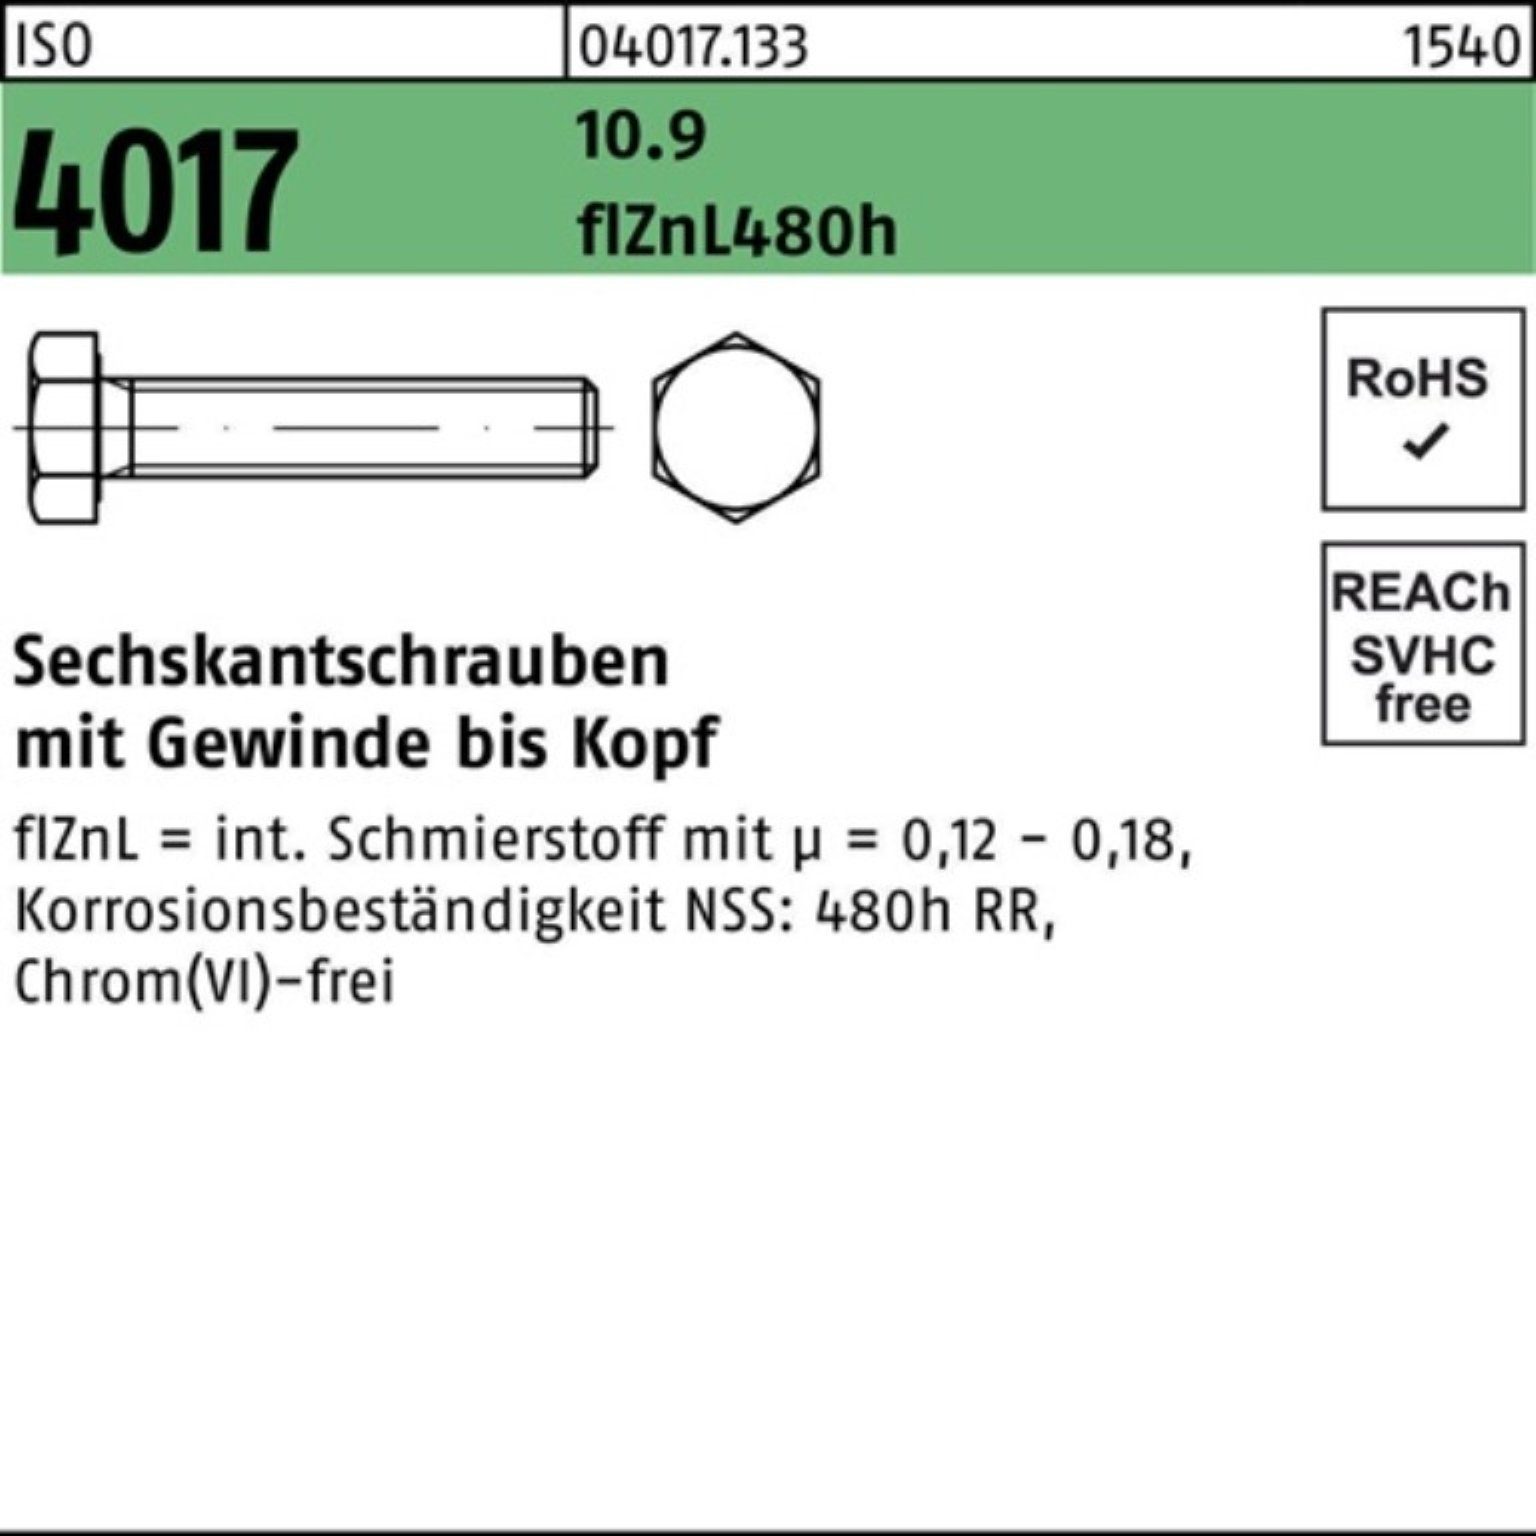 Bufab Sechskantschraube 100er Pack Sechskantschraube 4017 10.9 110 zinklamellenb. VG ISO M24x